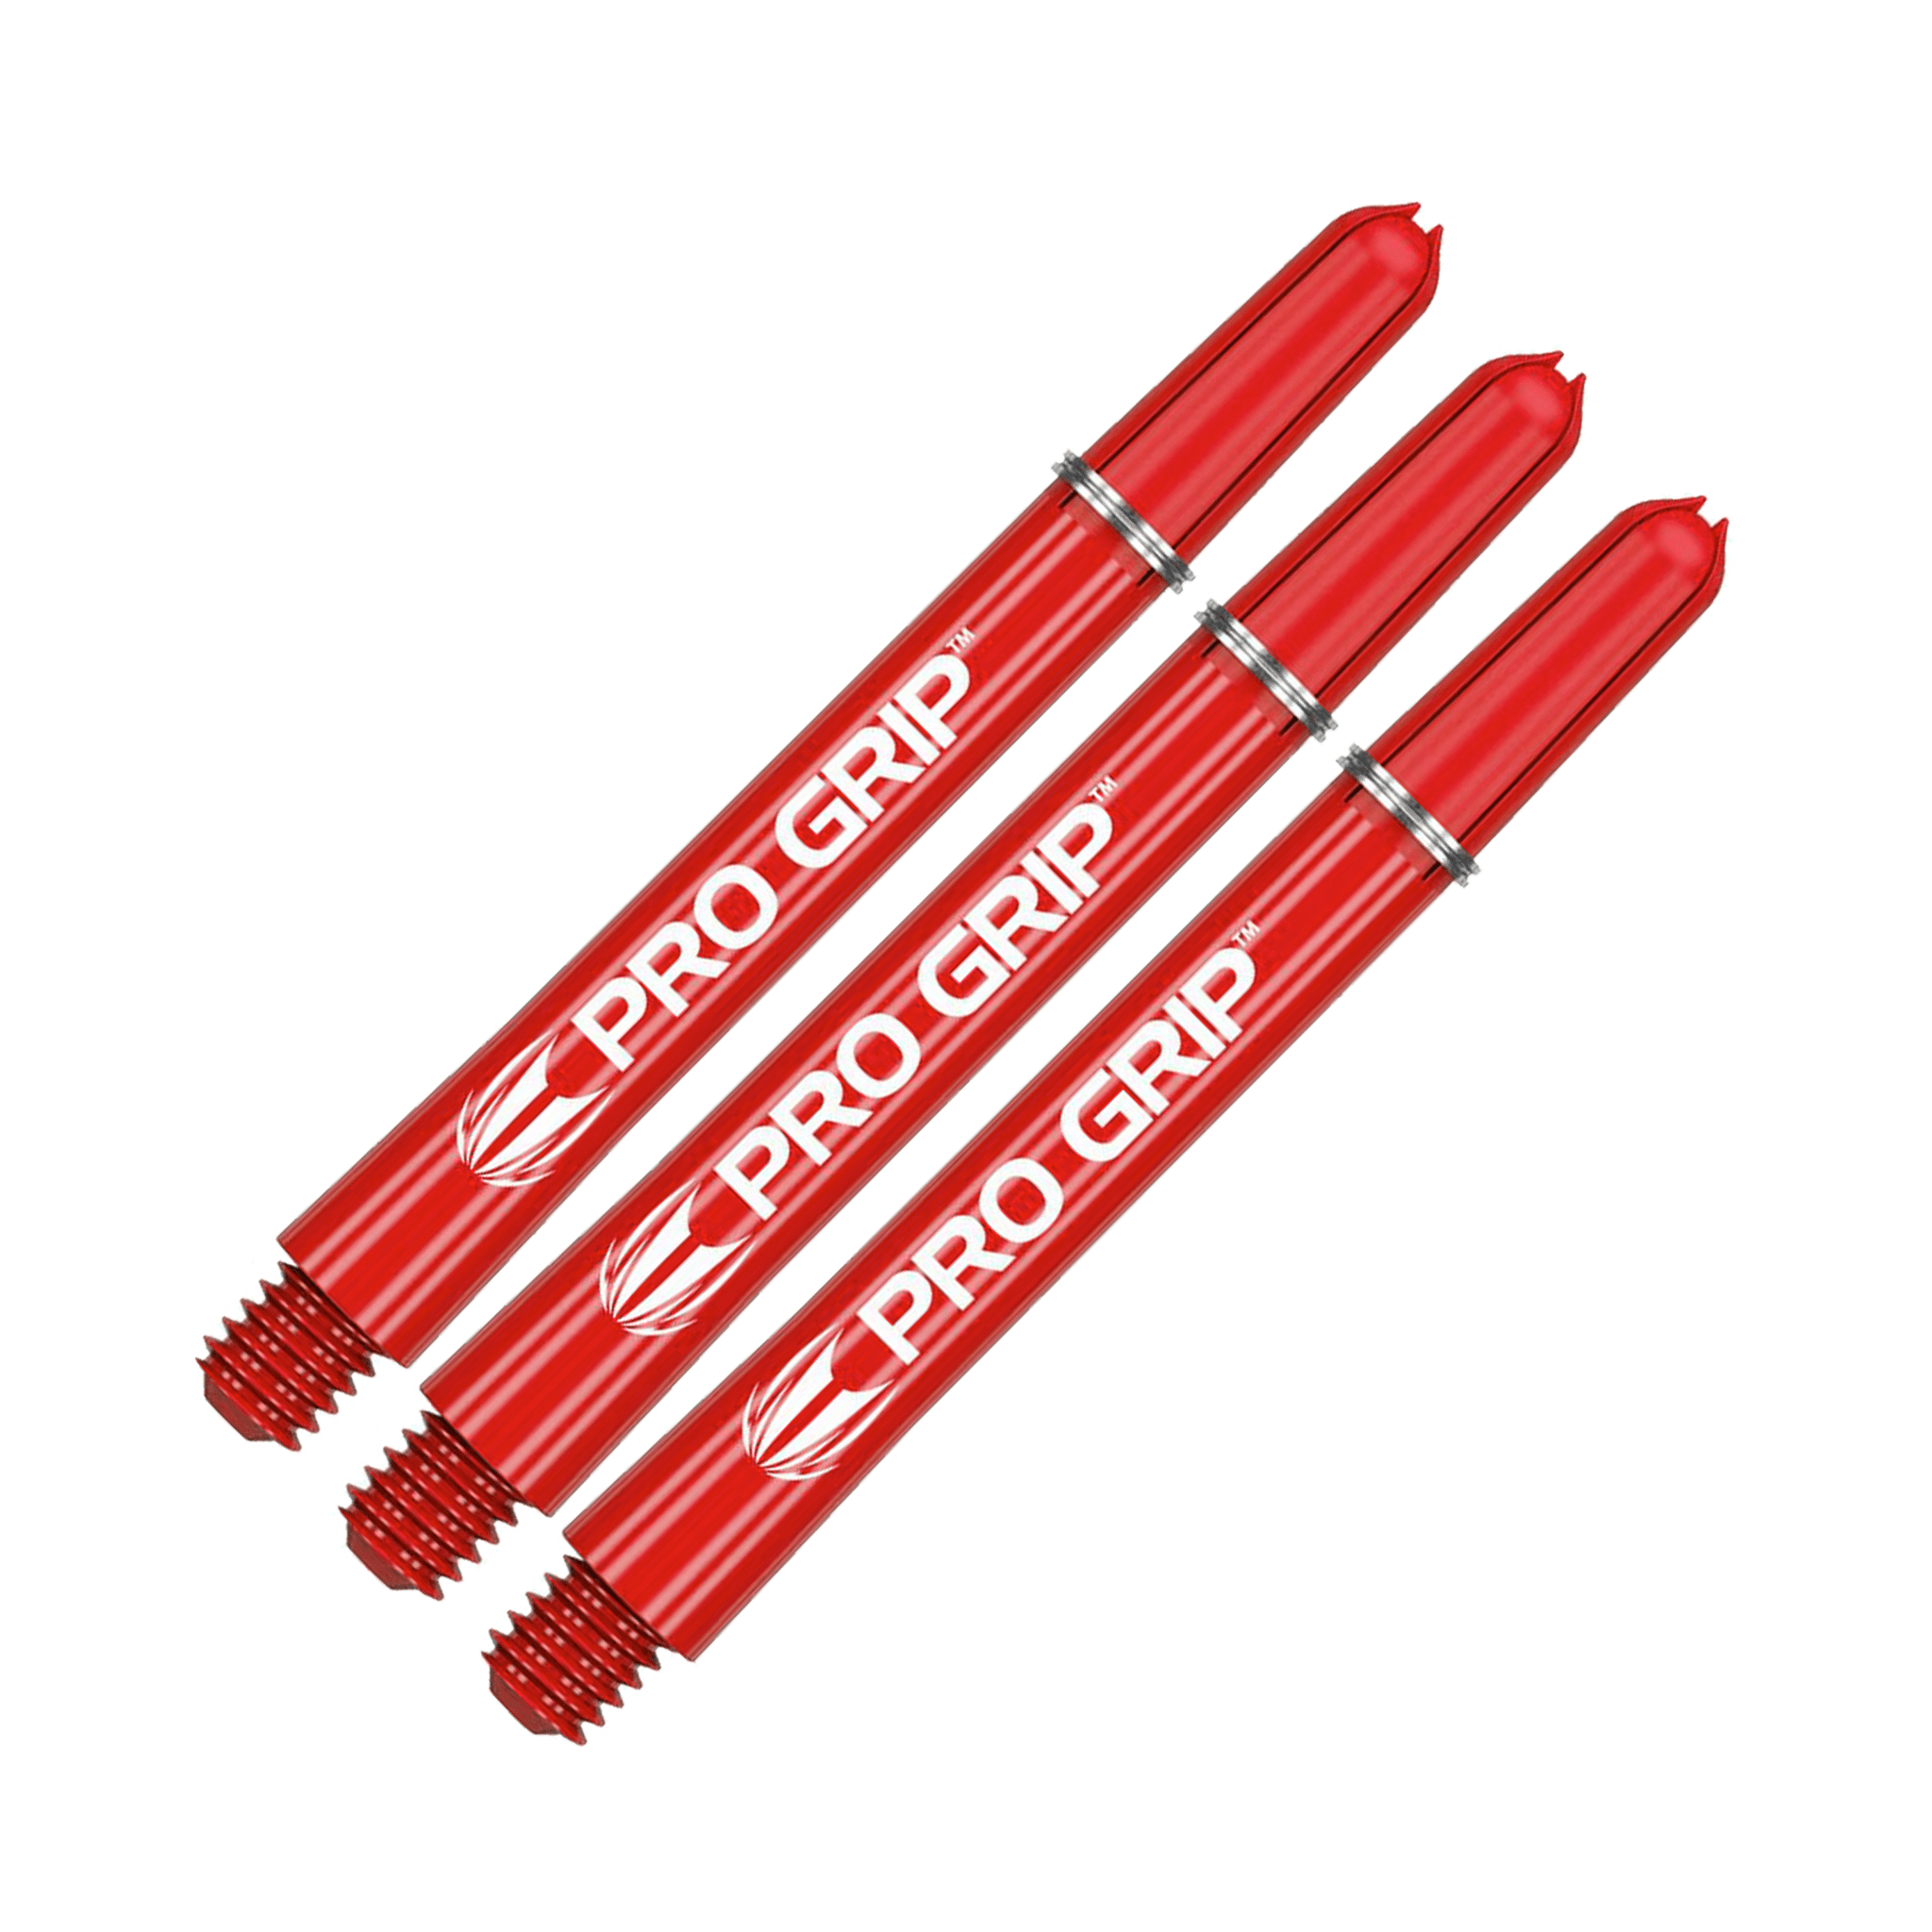 Target Pro Grip Multi Pack - Nylon Dart Shafts (3 Sets) Red / Medium (48mm) Shafts